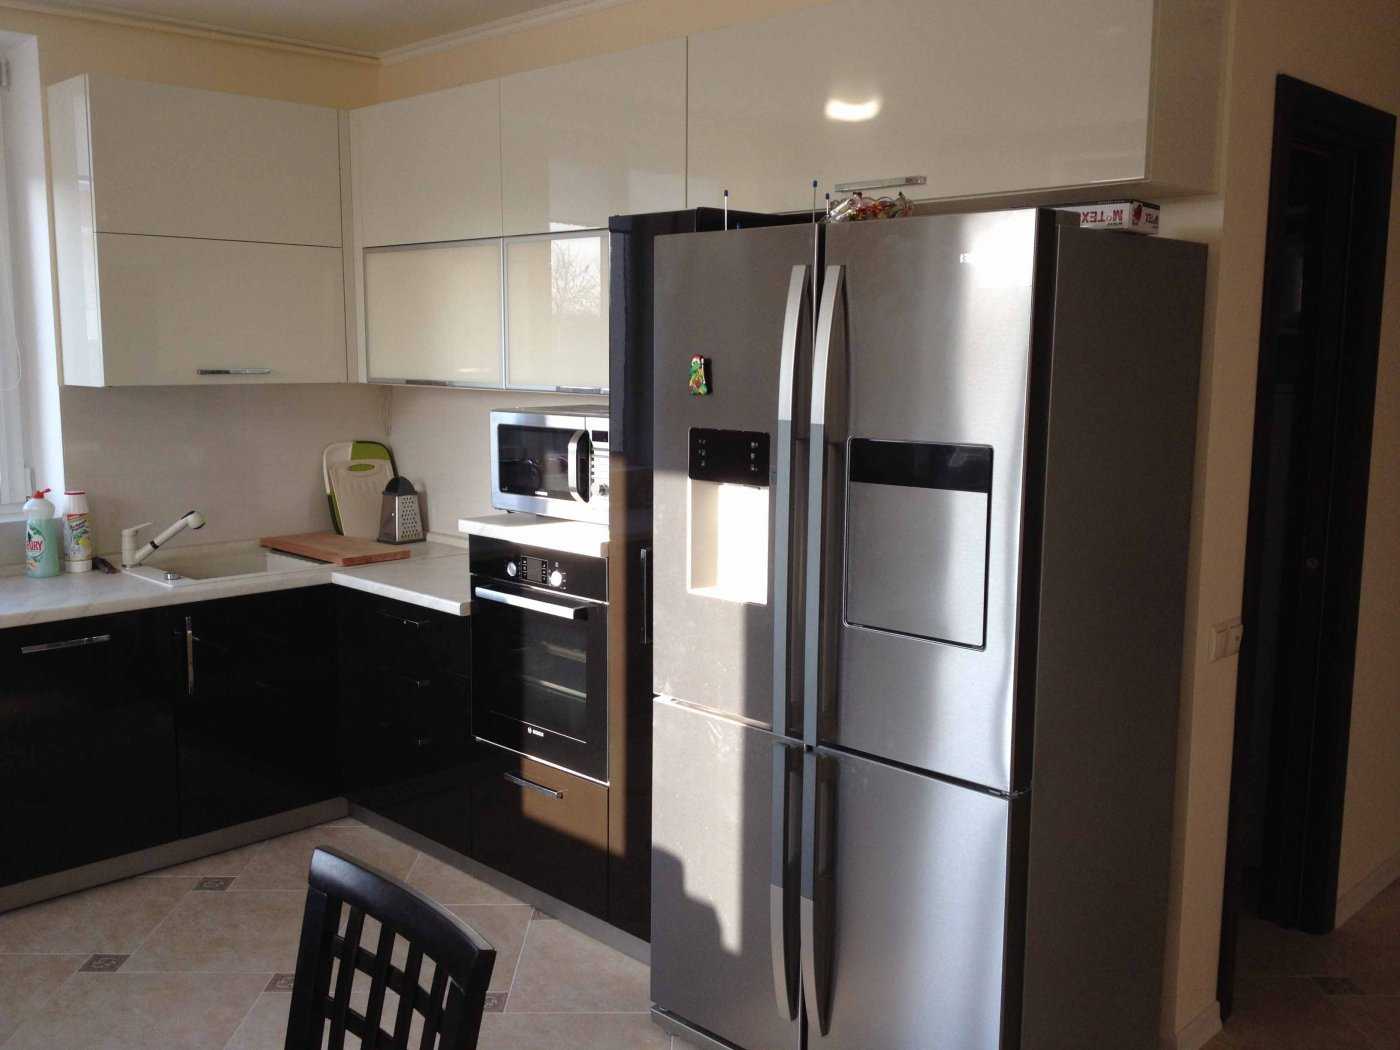 Холодильник на кухне - 190 фото грамотного размещения и примеры интерьерных дизайн-проектов с холодильником